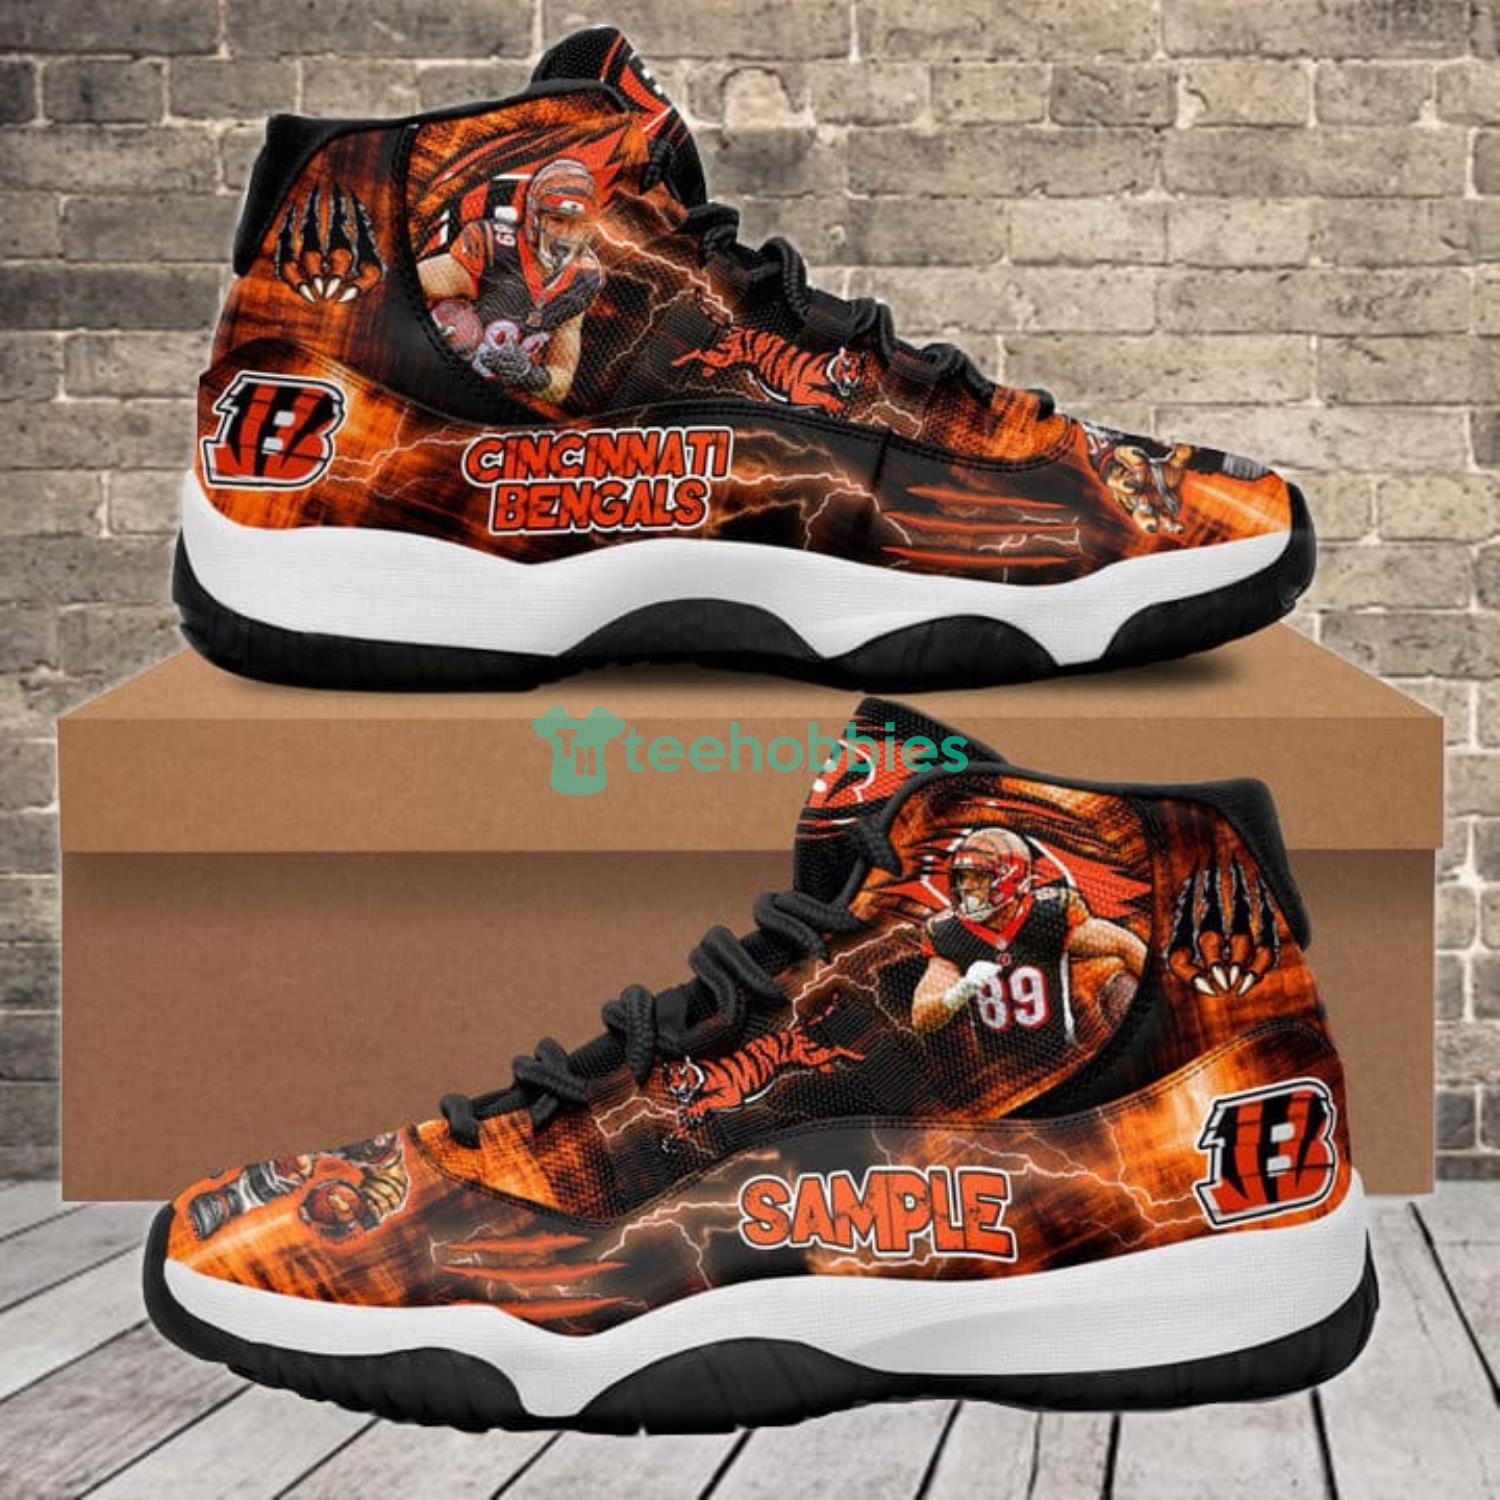 Cincinnati Bengals Drew Sample Air Jordan 11 Shoes Sneaker For Fans Product Photo 1